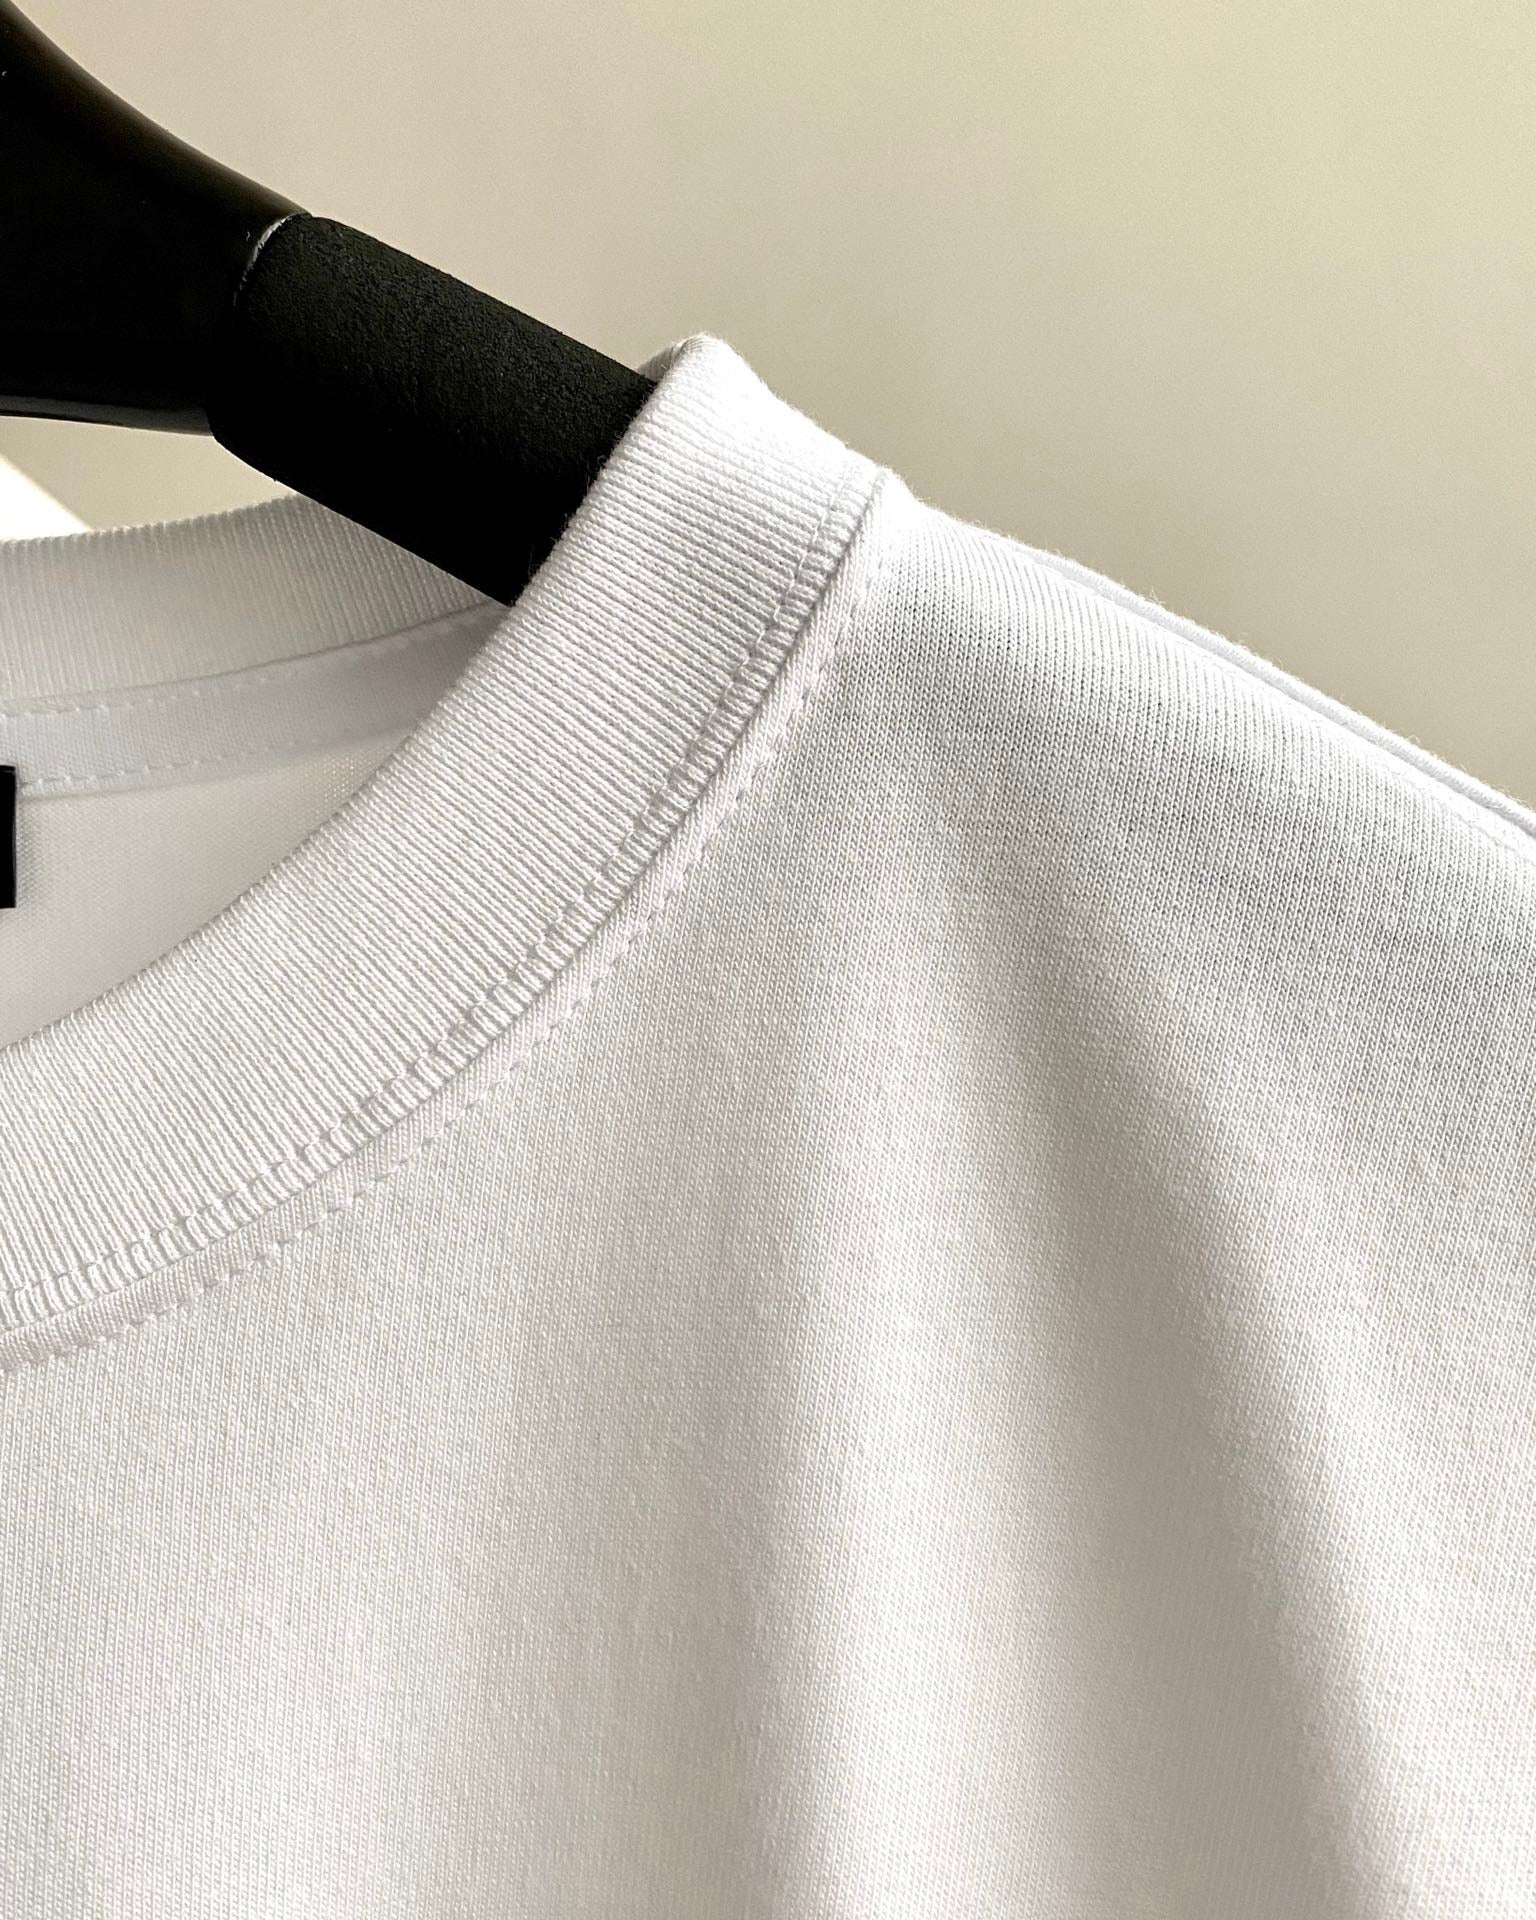 White T-Shirt - Size S